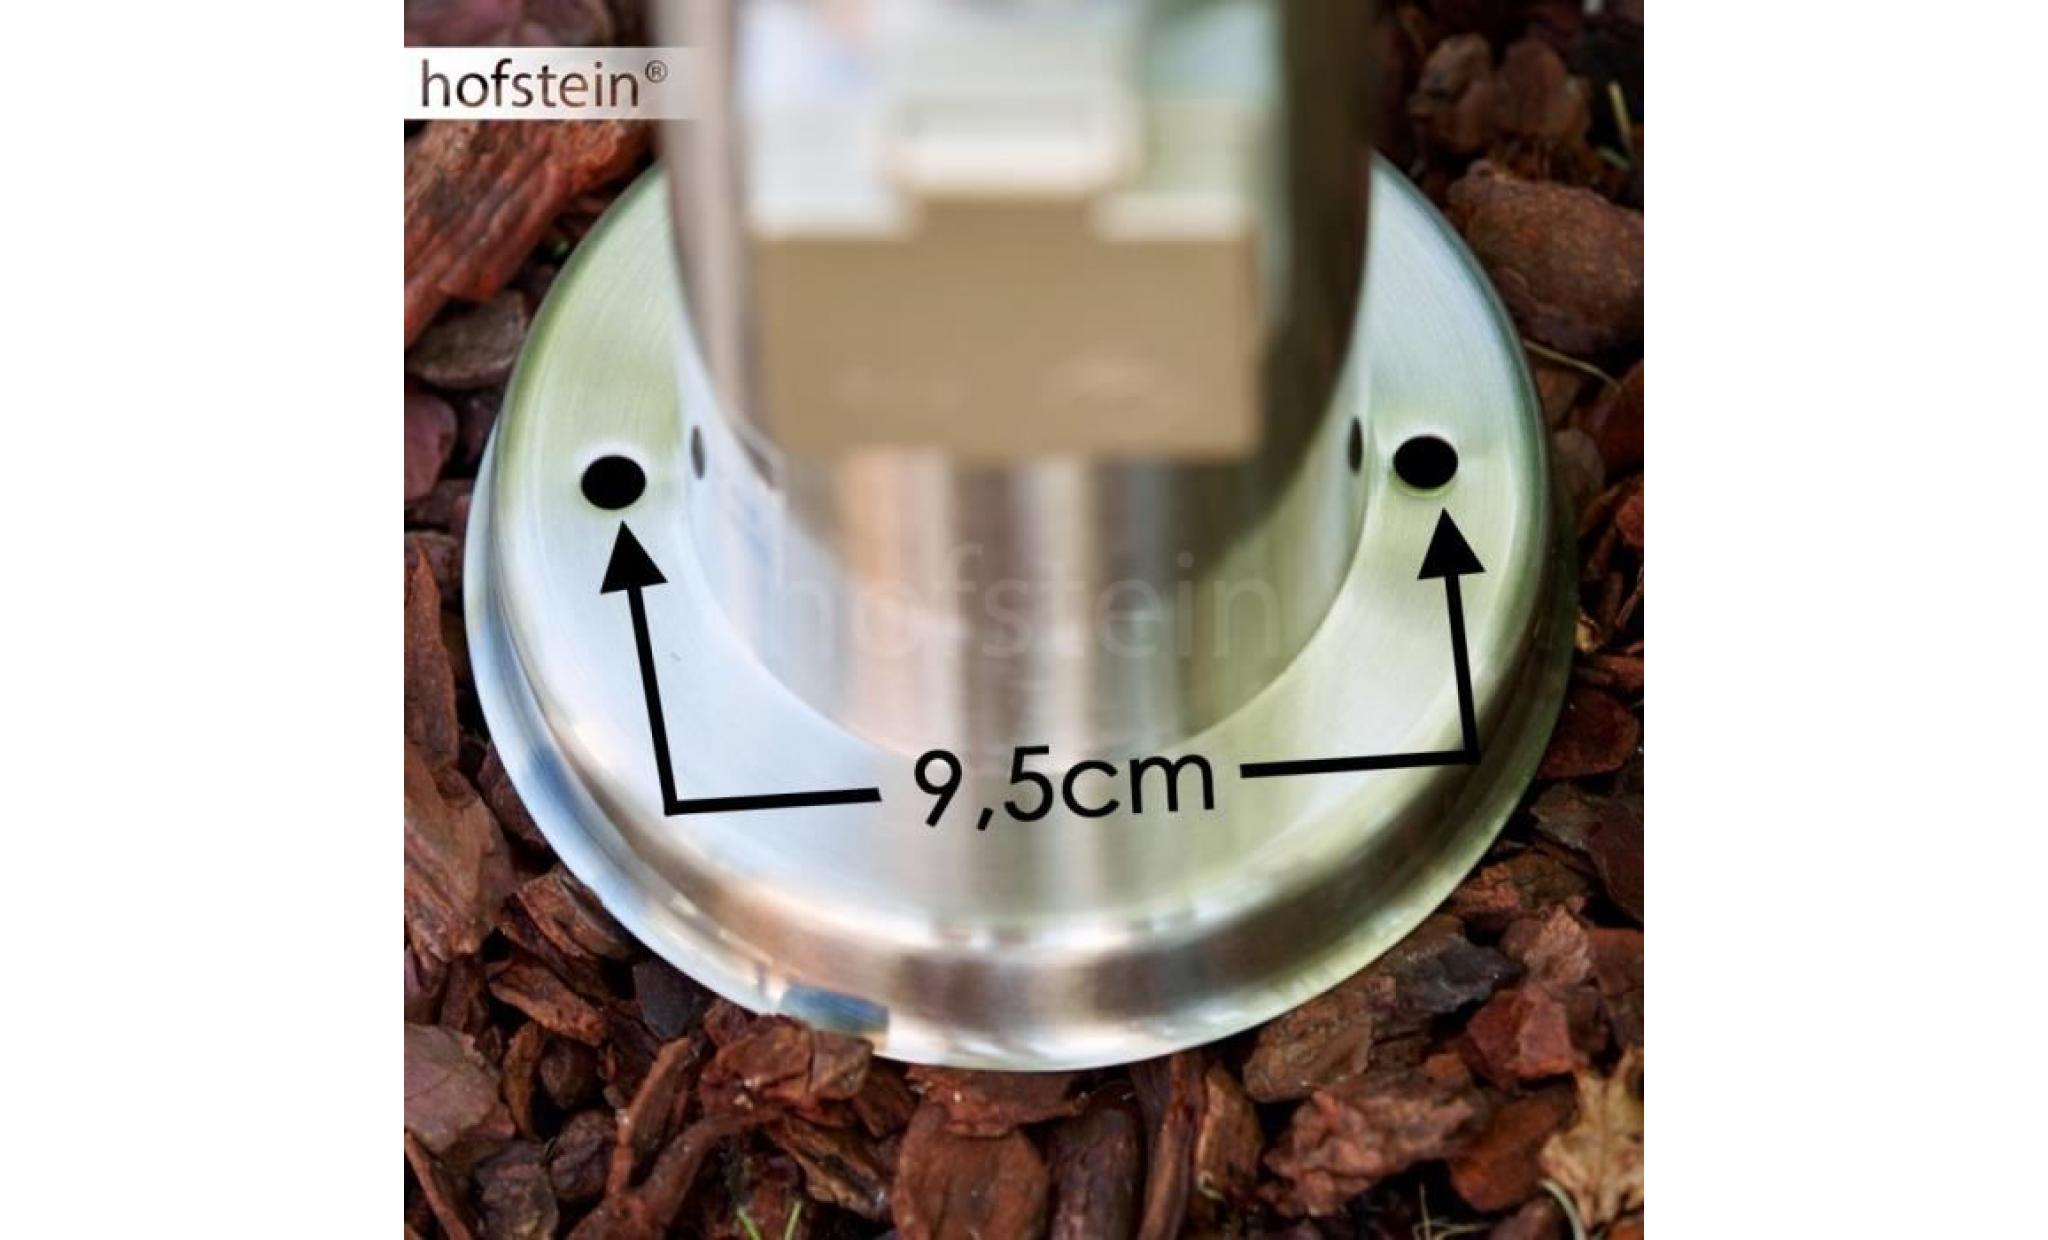 borne d'éclairage hofstein caserta acier inoxydable avec prise et détecteur de mouvement pas cher